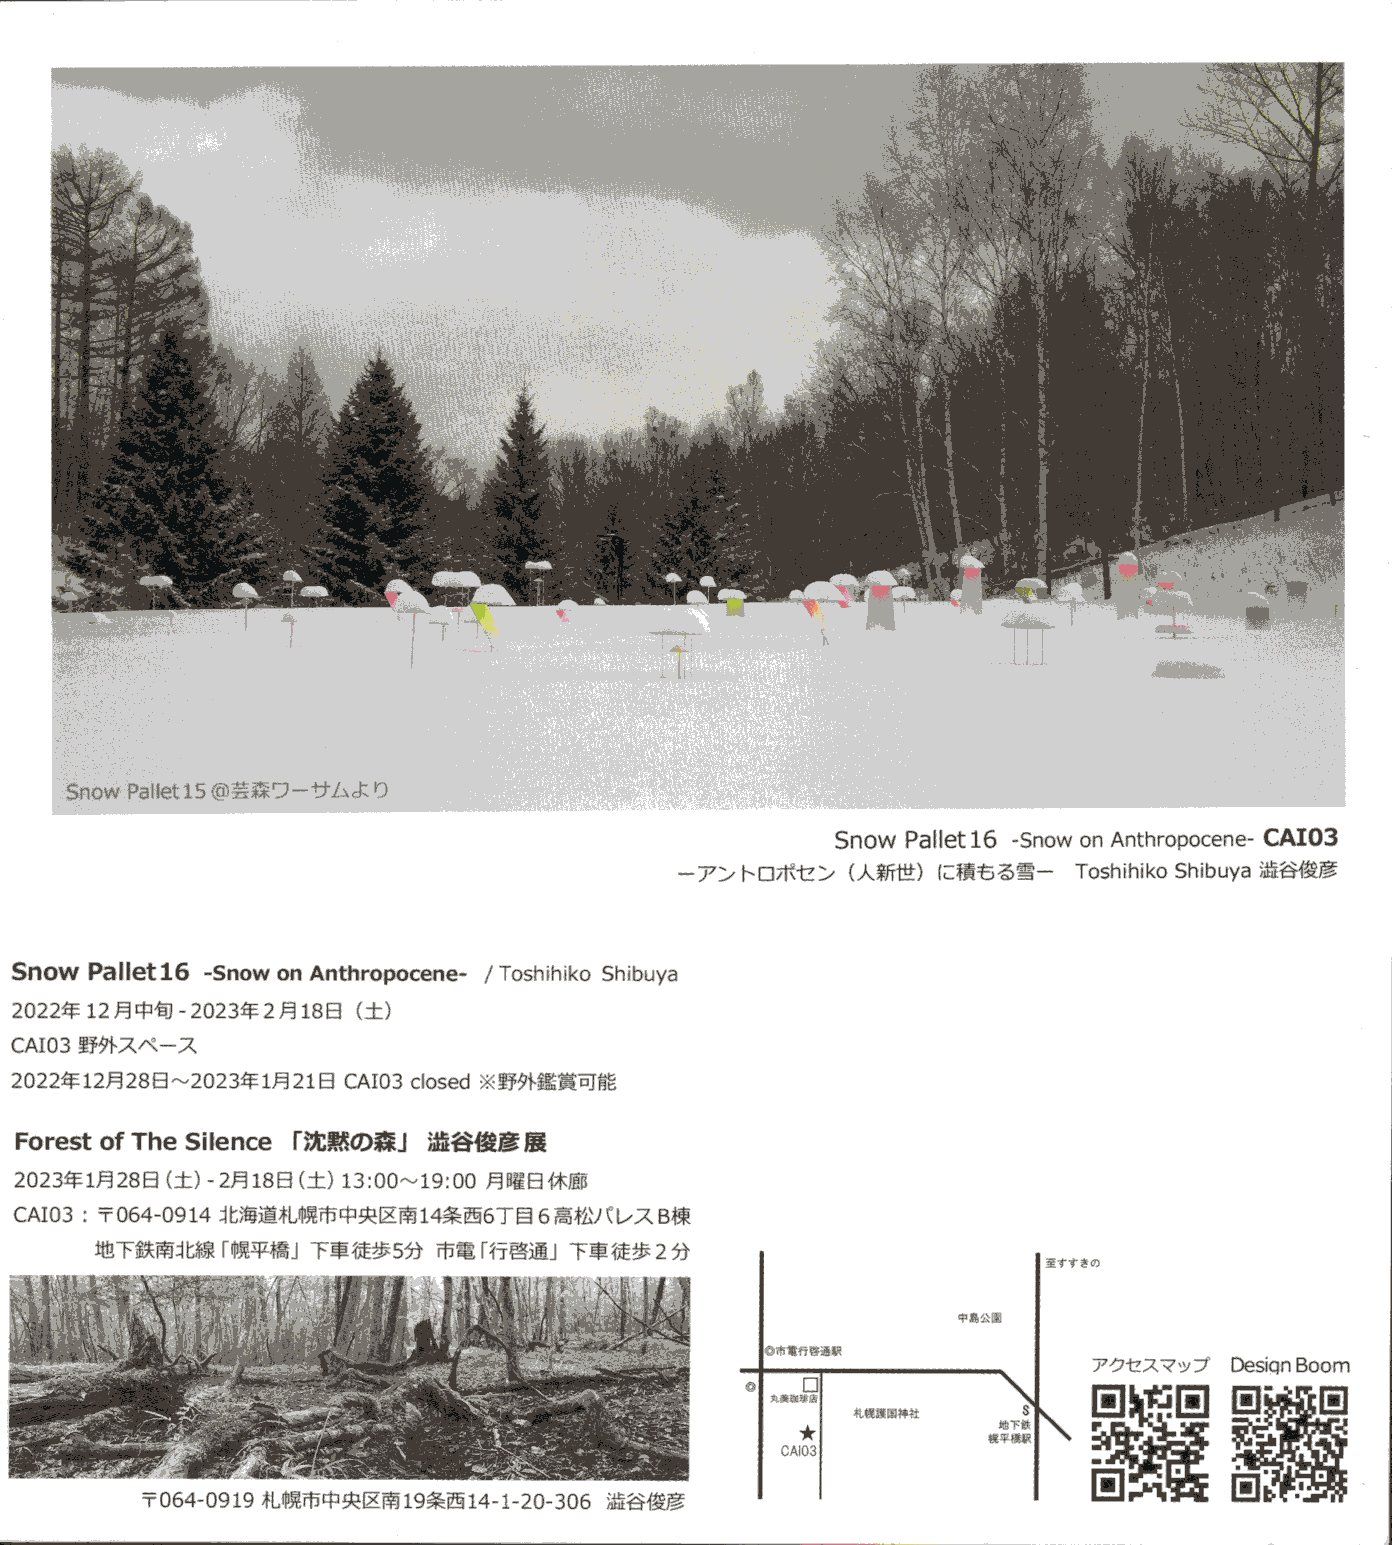 澁谷俊彦 『Snow pallet 16 -アントロポセン（人新世）に積もる雪-』 イメージ画像